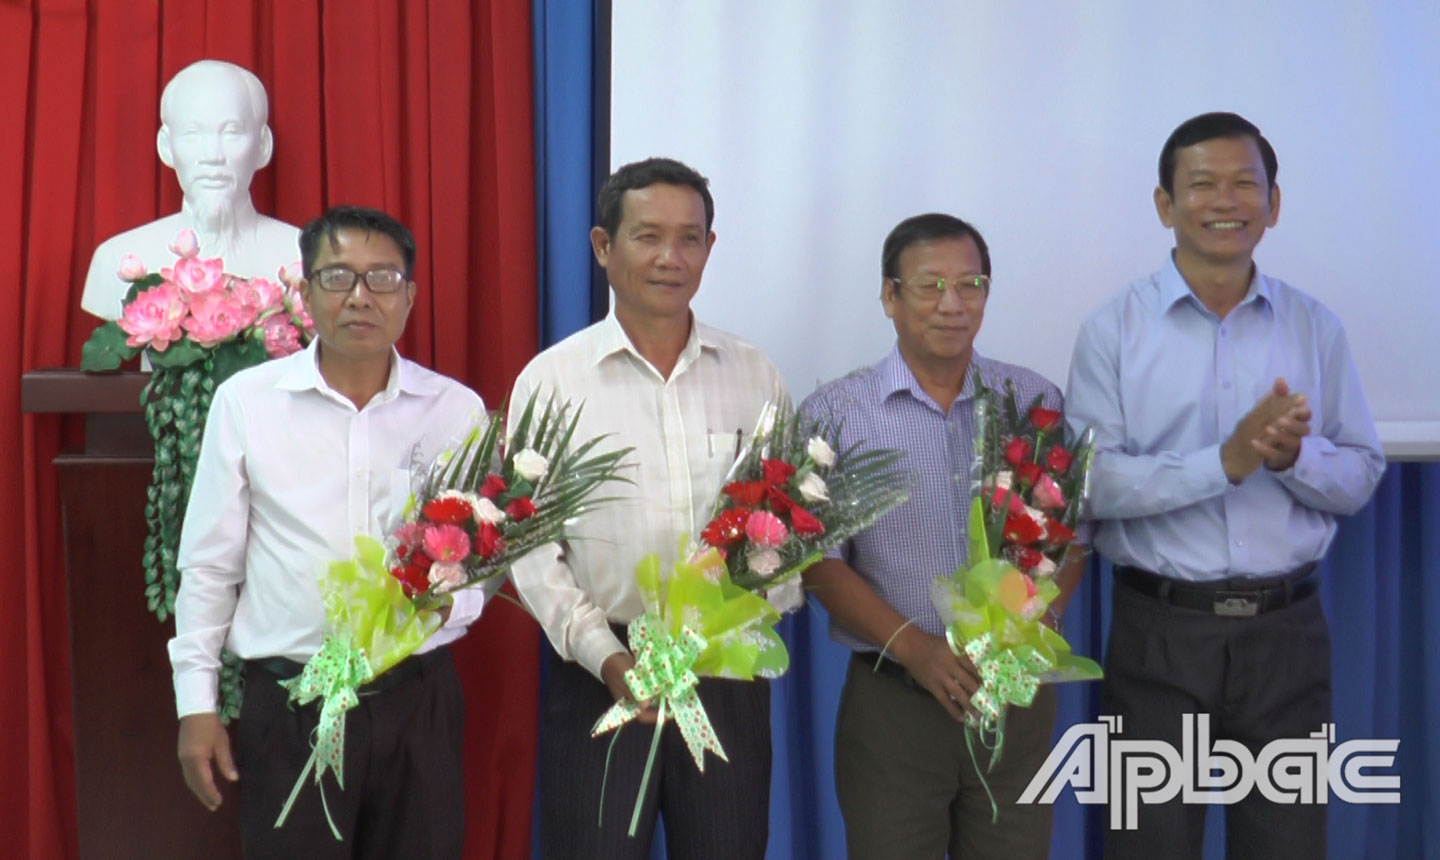 Đồng chí Bùi Thái Sơn tặng hoa đồng chí Nguyễn Quốc Khánh và các nguyên Phó Chủ tịch UBND huyện Huỳnh Tiến Huân và Nguyễn Văn Dũng.